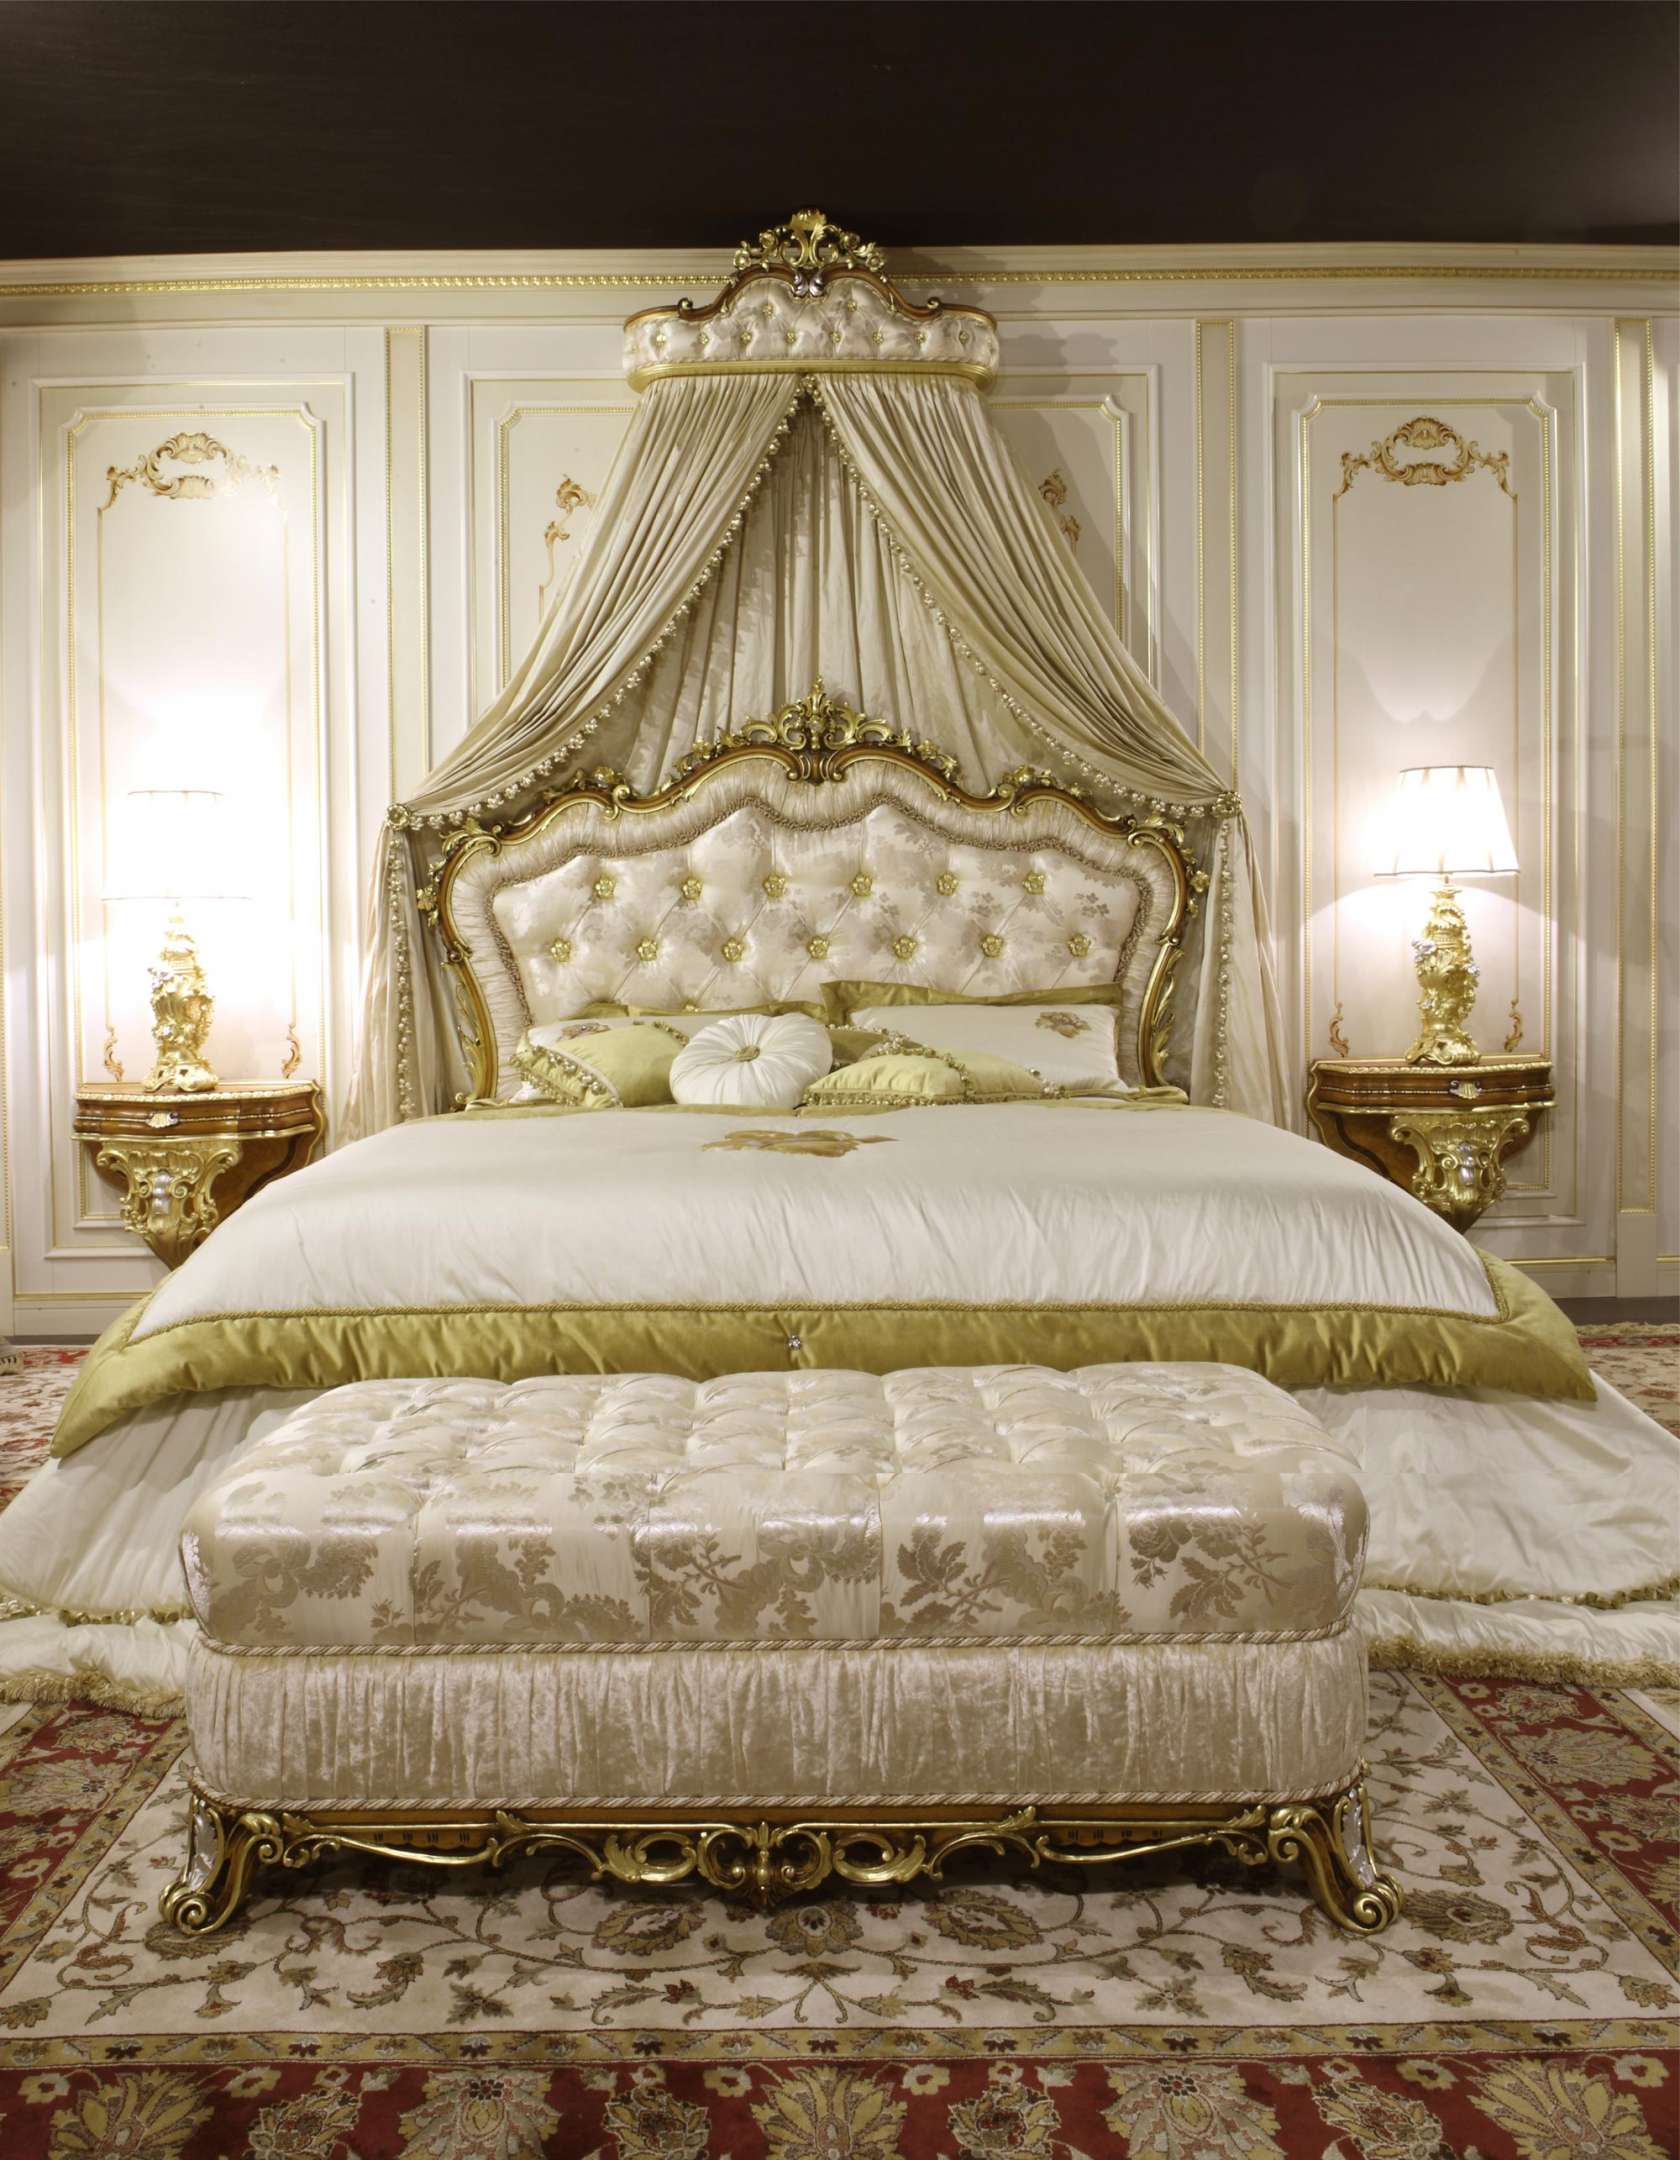 банкатка в стиле бароко в интерьере спальни